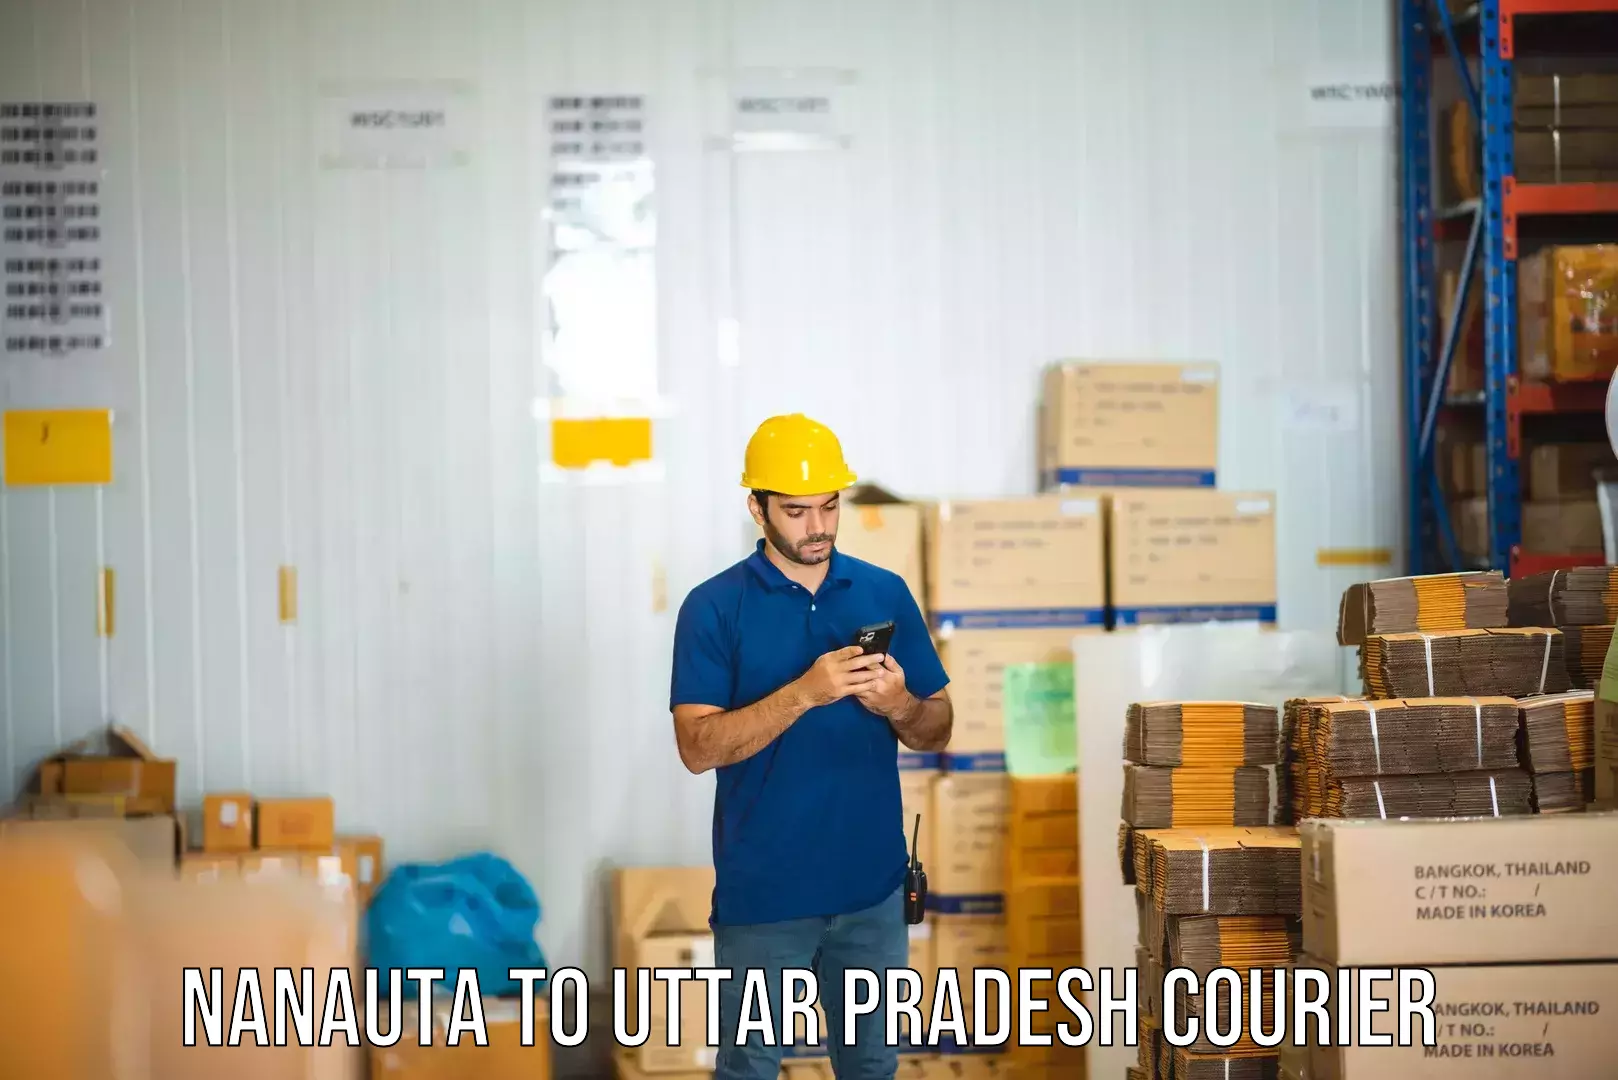 Business shipping needs Nanauta to Gautam Buddha Nagar